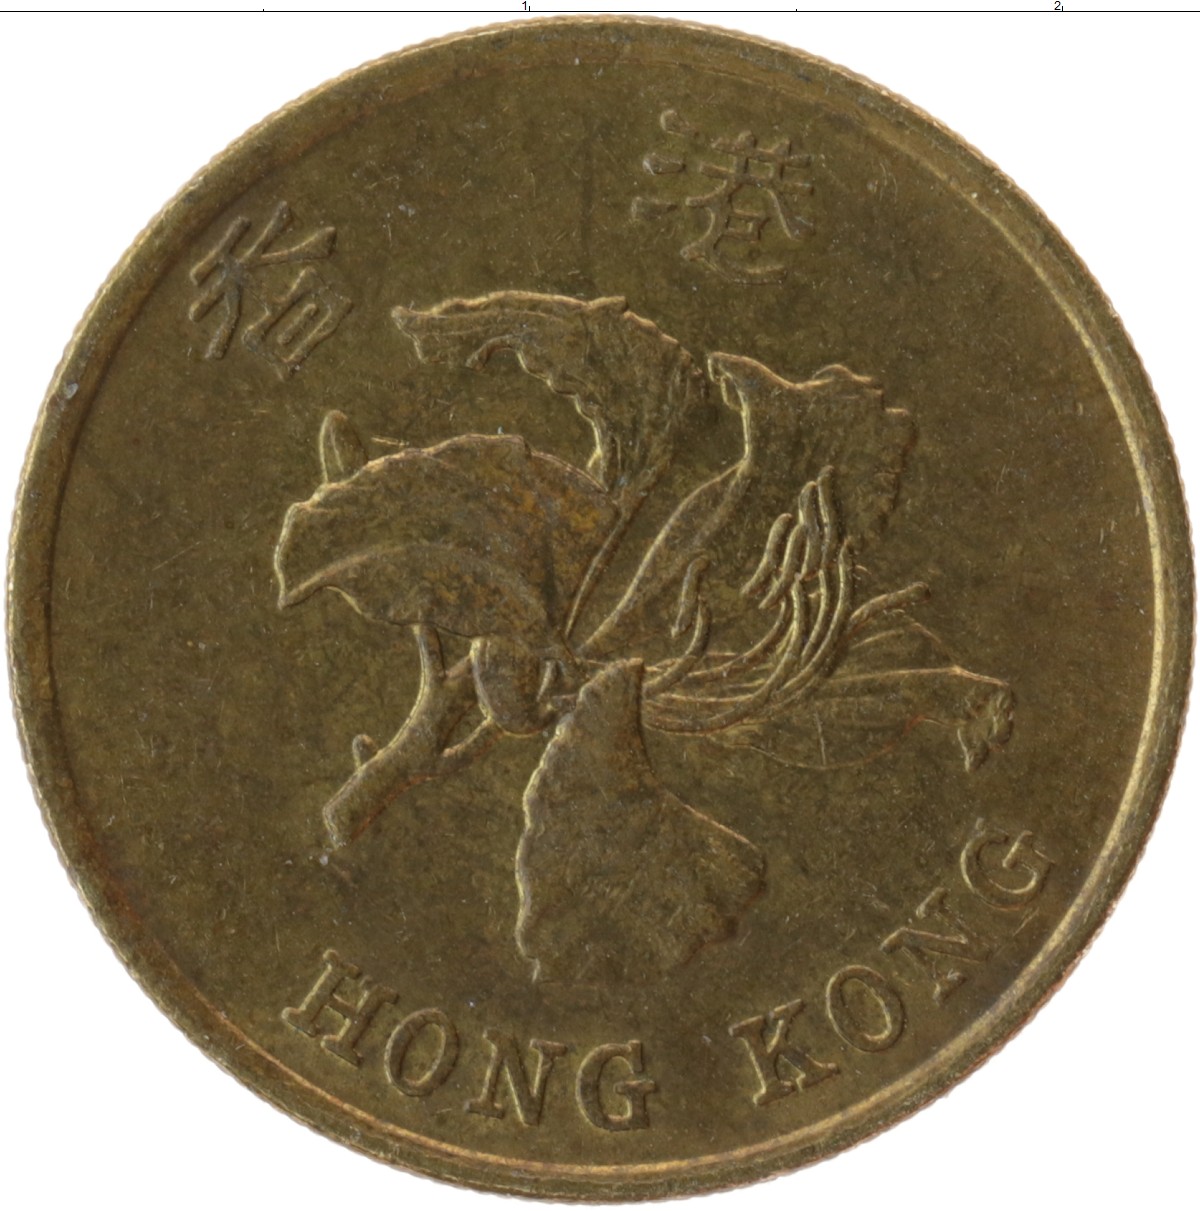 899 hkd в рублях. Гонконг 50 центов 1997. Монета Fifty Cent Гонконг. Гонконг 50 центов, 1993. Монета Китай 50 центов Chihli.